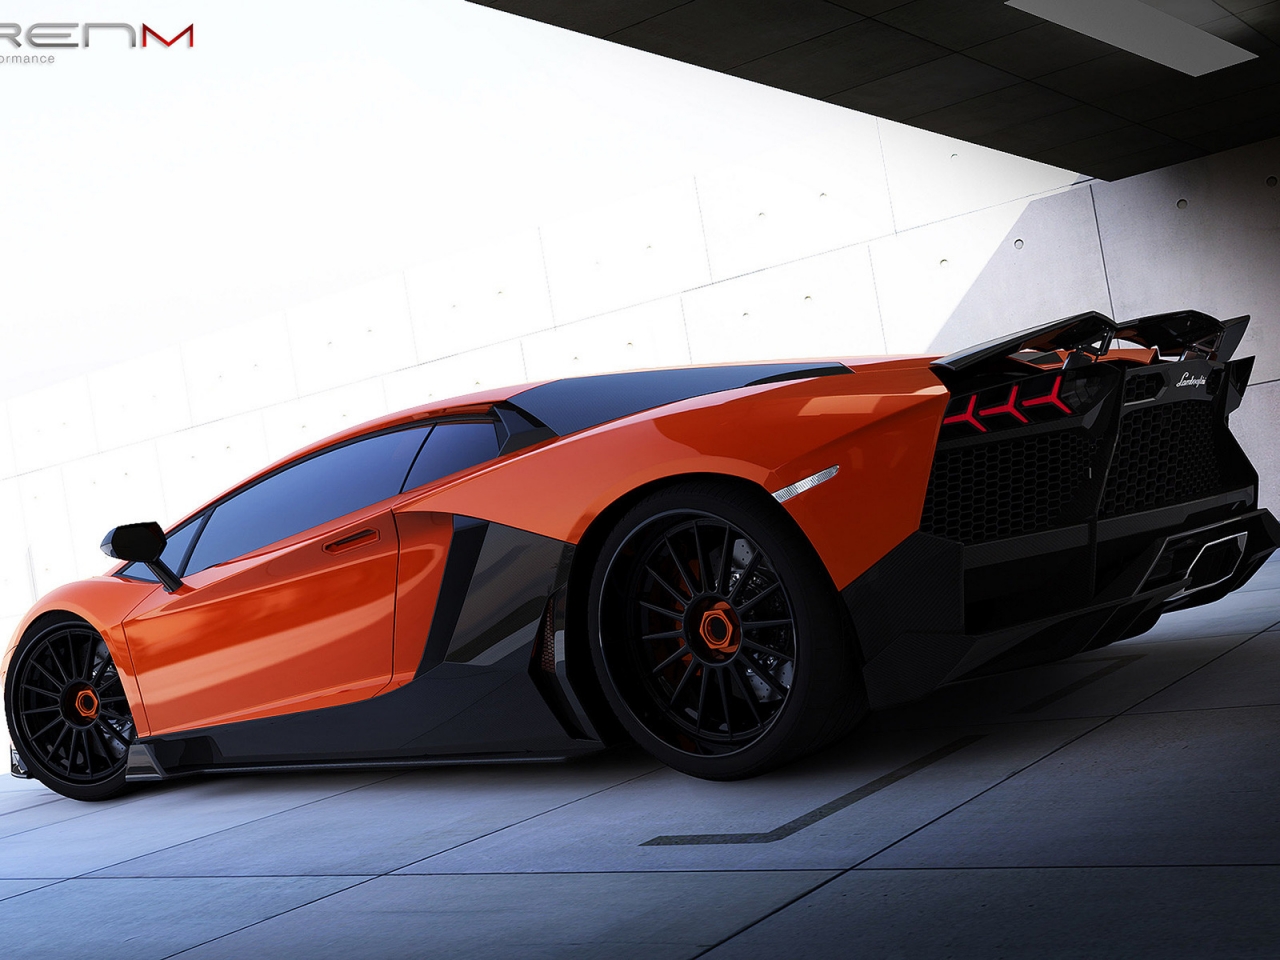 Renm Lamborghini Aventador for 1280 x 960 resolution